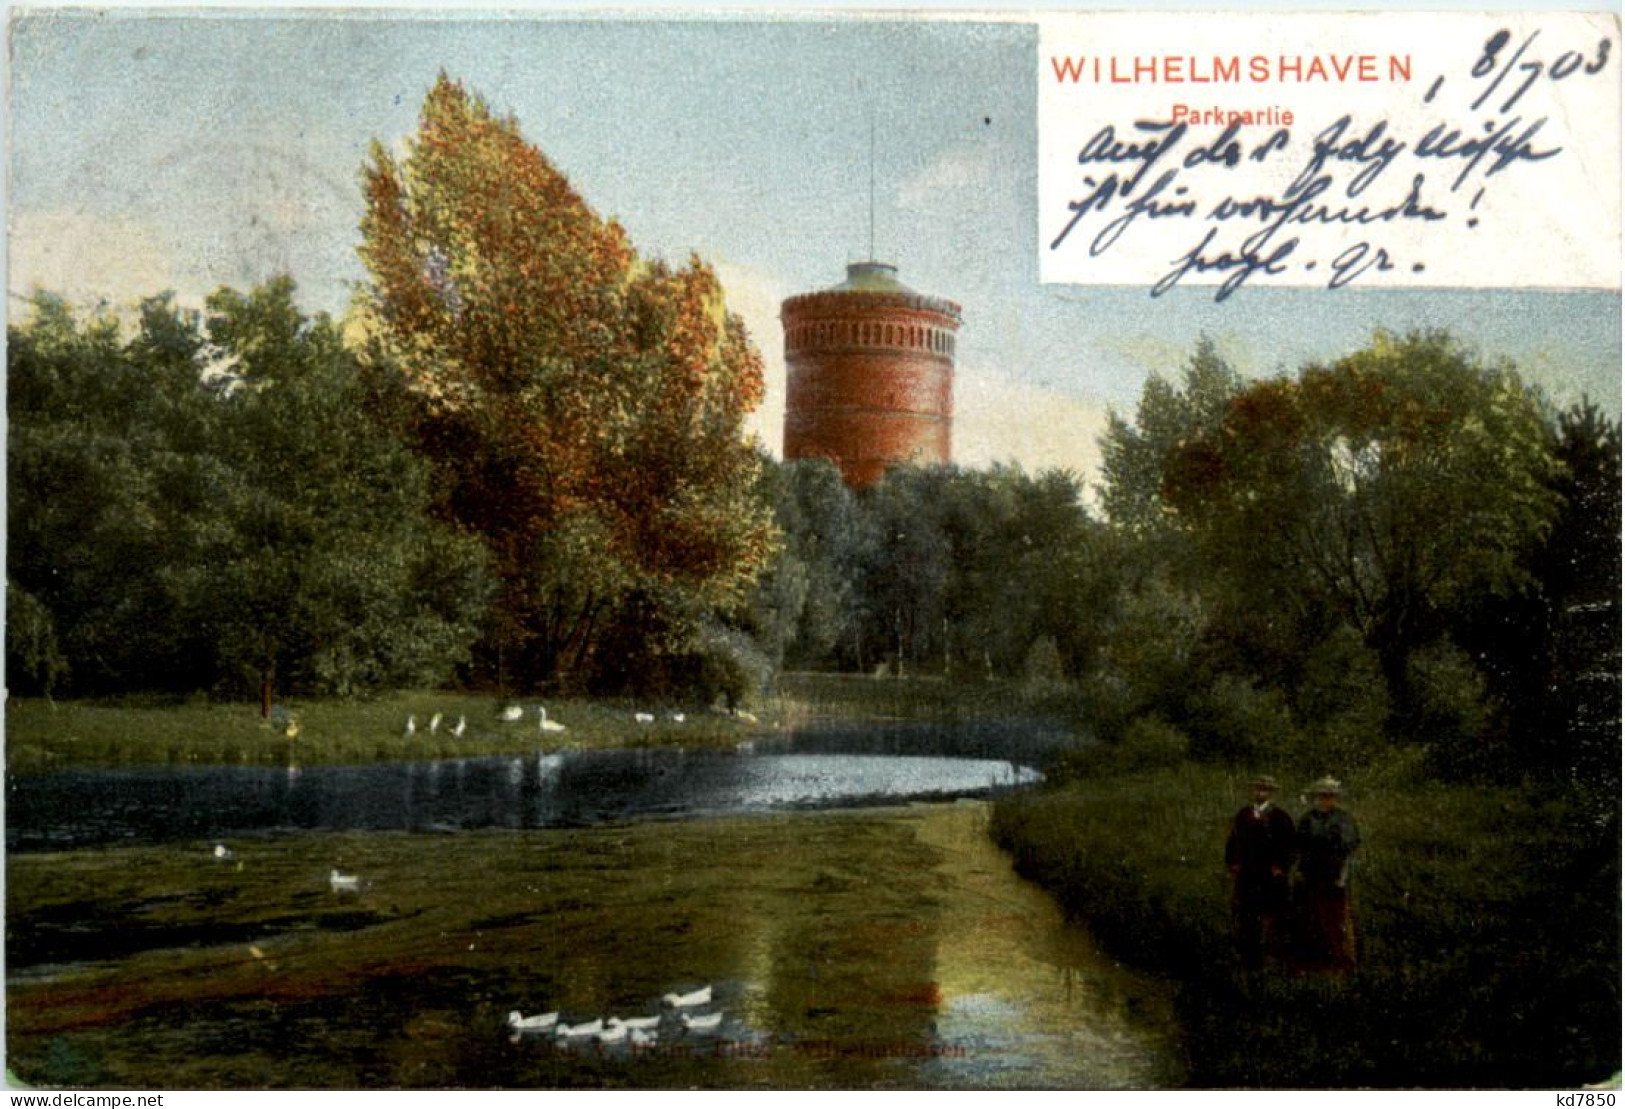 Wilhelmshaven - Parkpartie - Wilhelmshaven